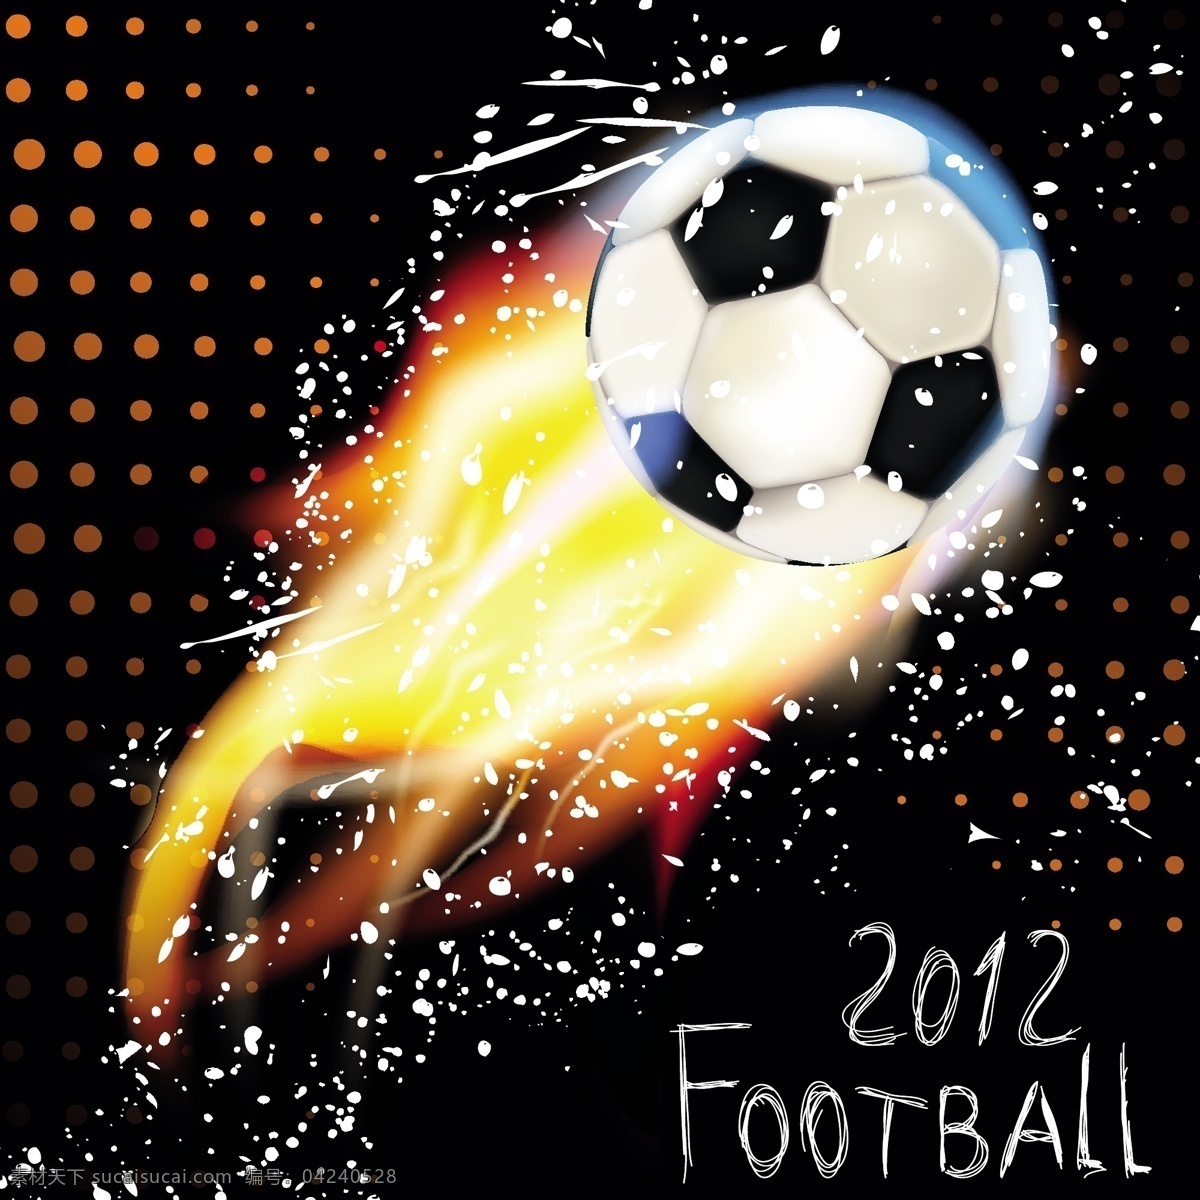 燃烧 足球 矢量 模板下载 世界杯 足球主题 火焰 圆点 体育运动 生活百科 矢量素材 黑色